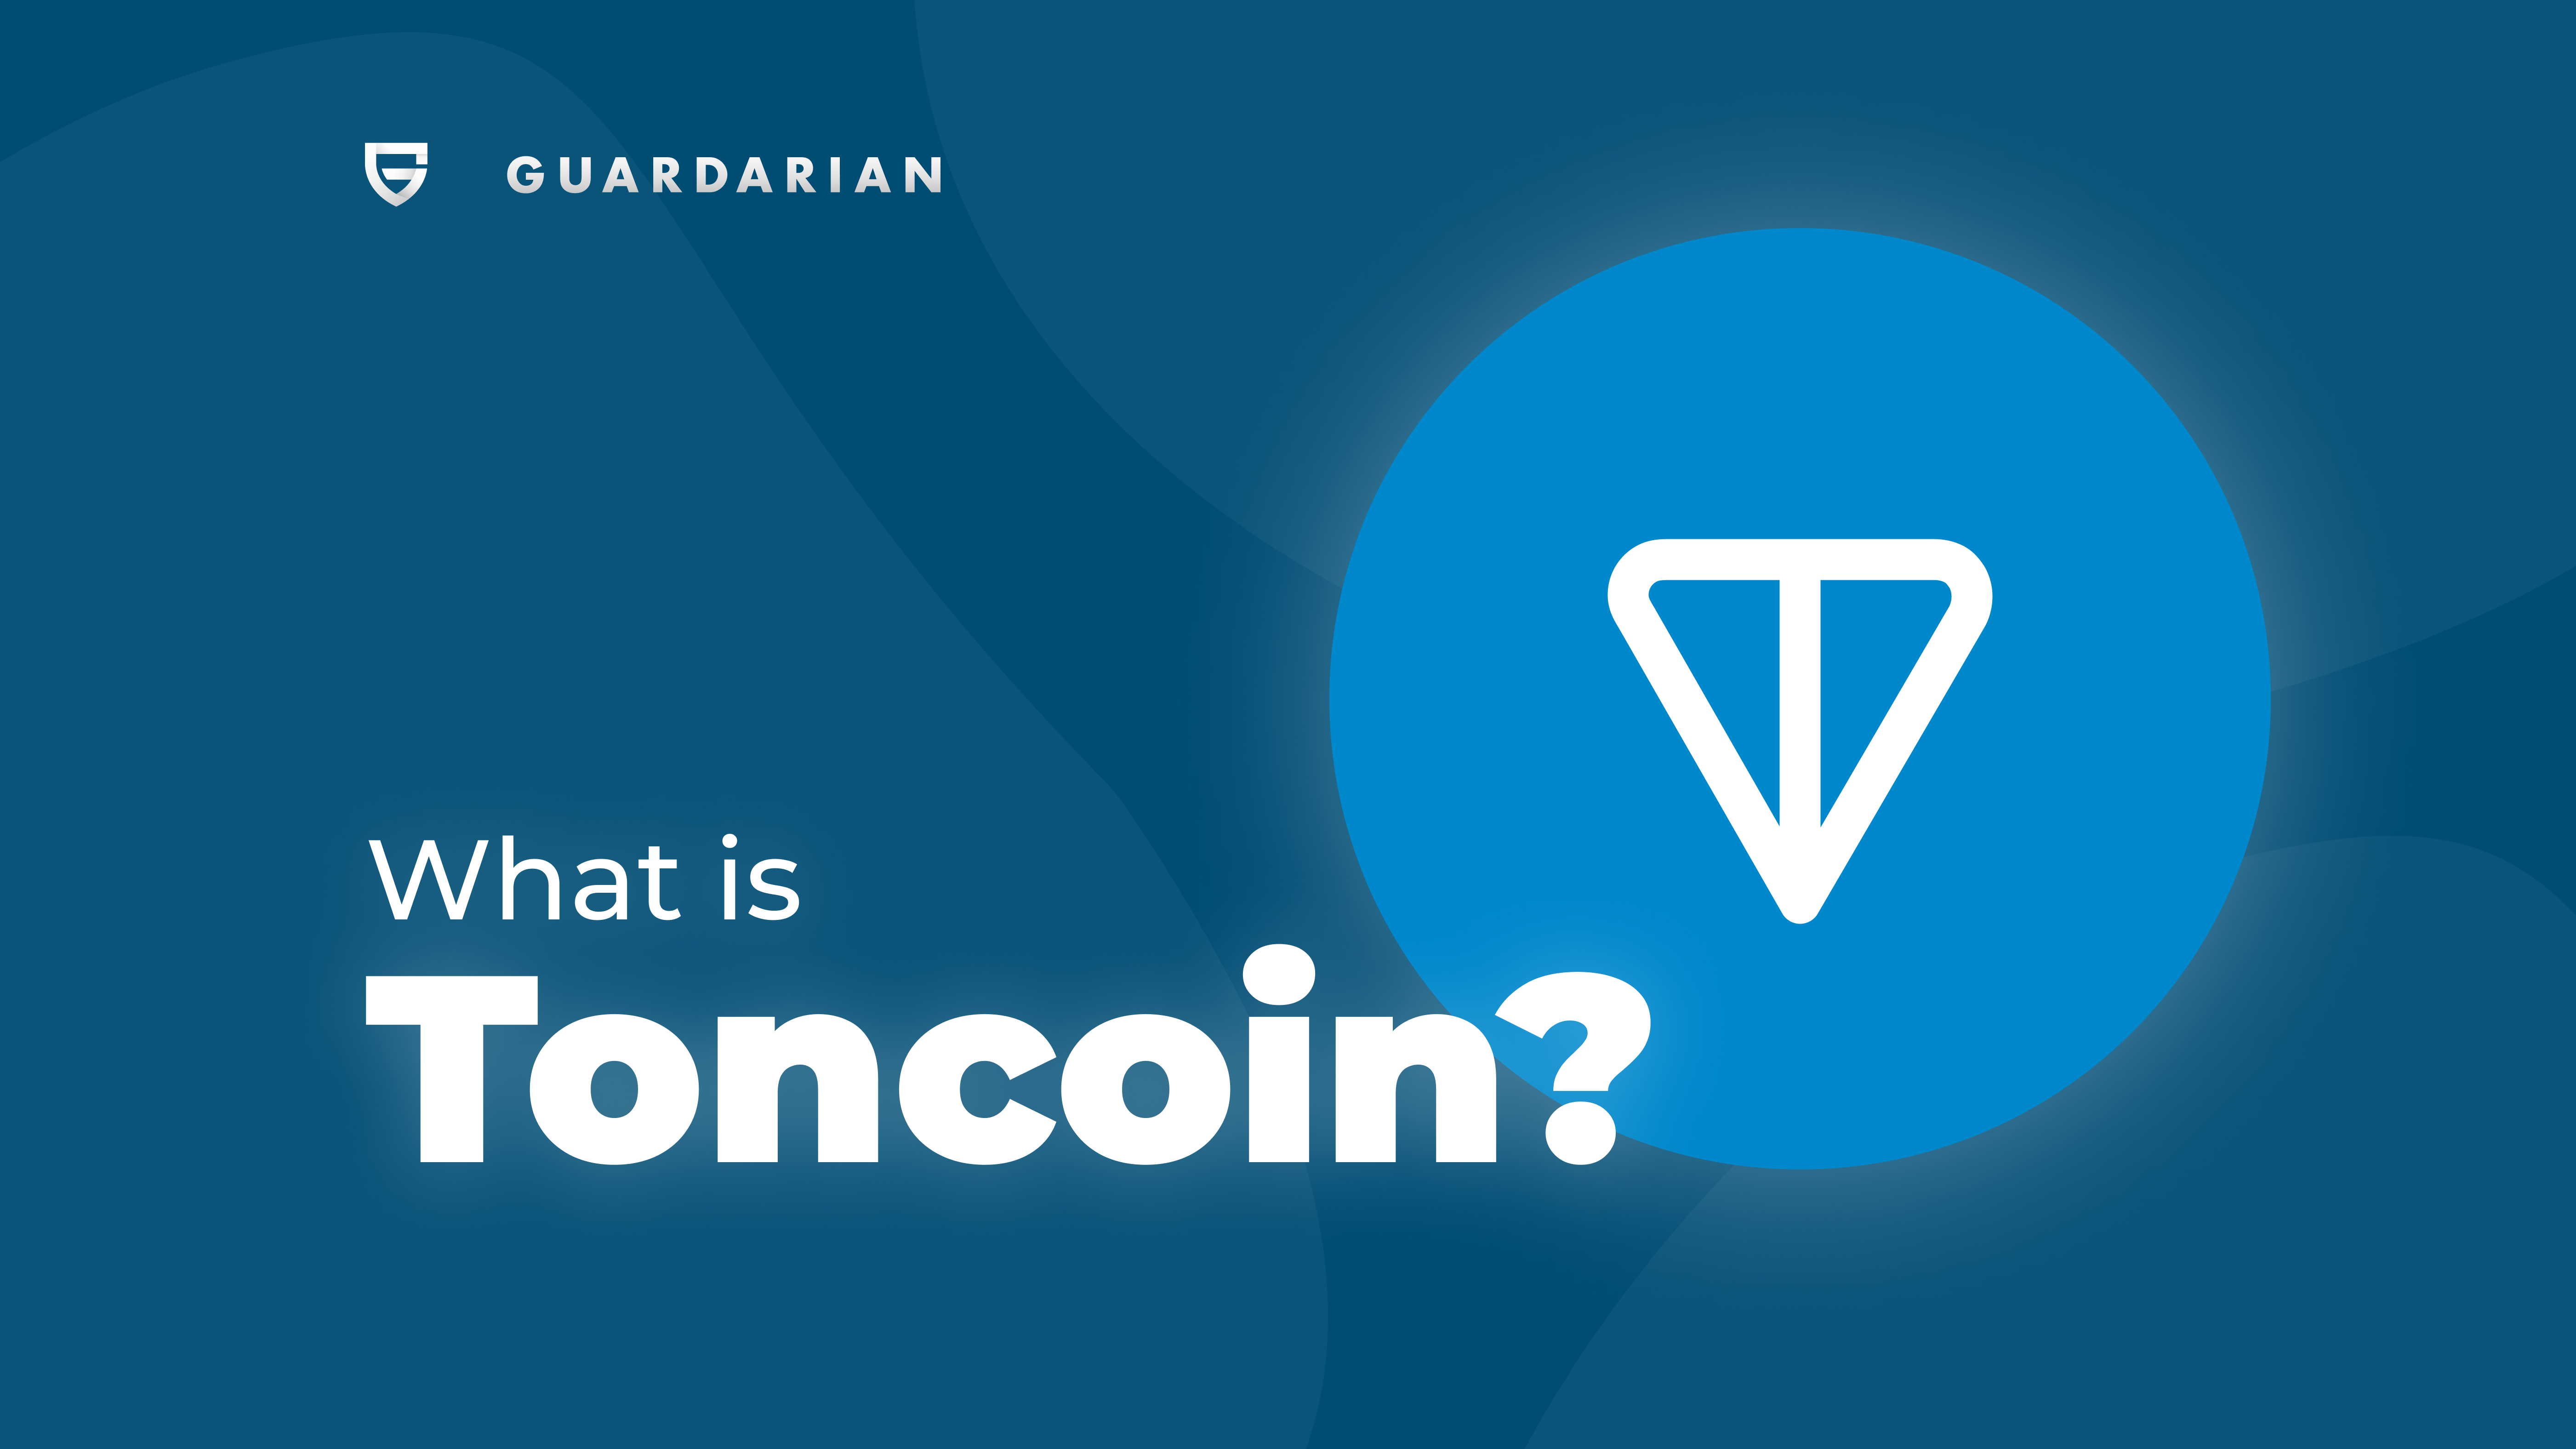 Toncoin (TON) explained: can TON gain adoption with Telegram? | OKX